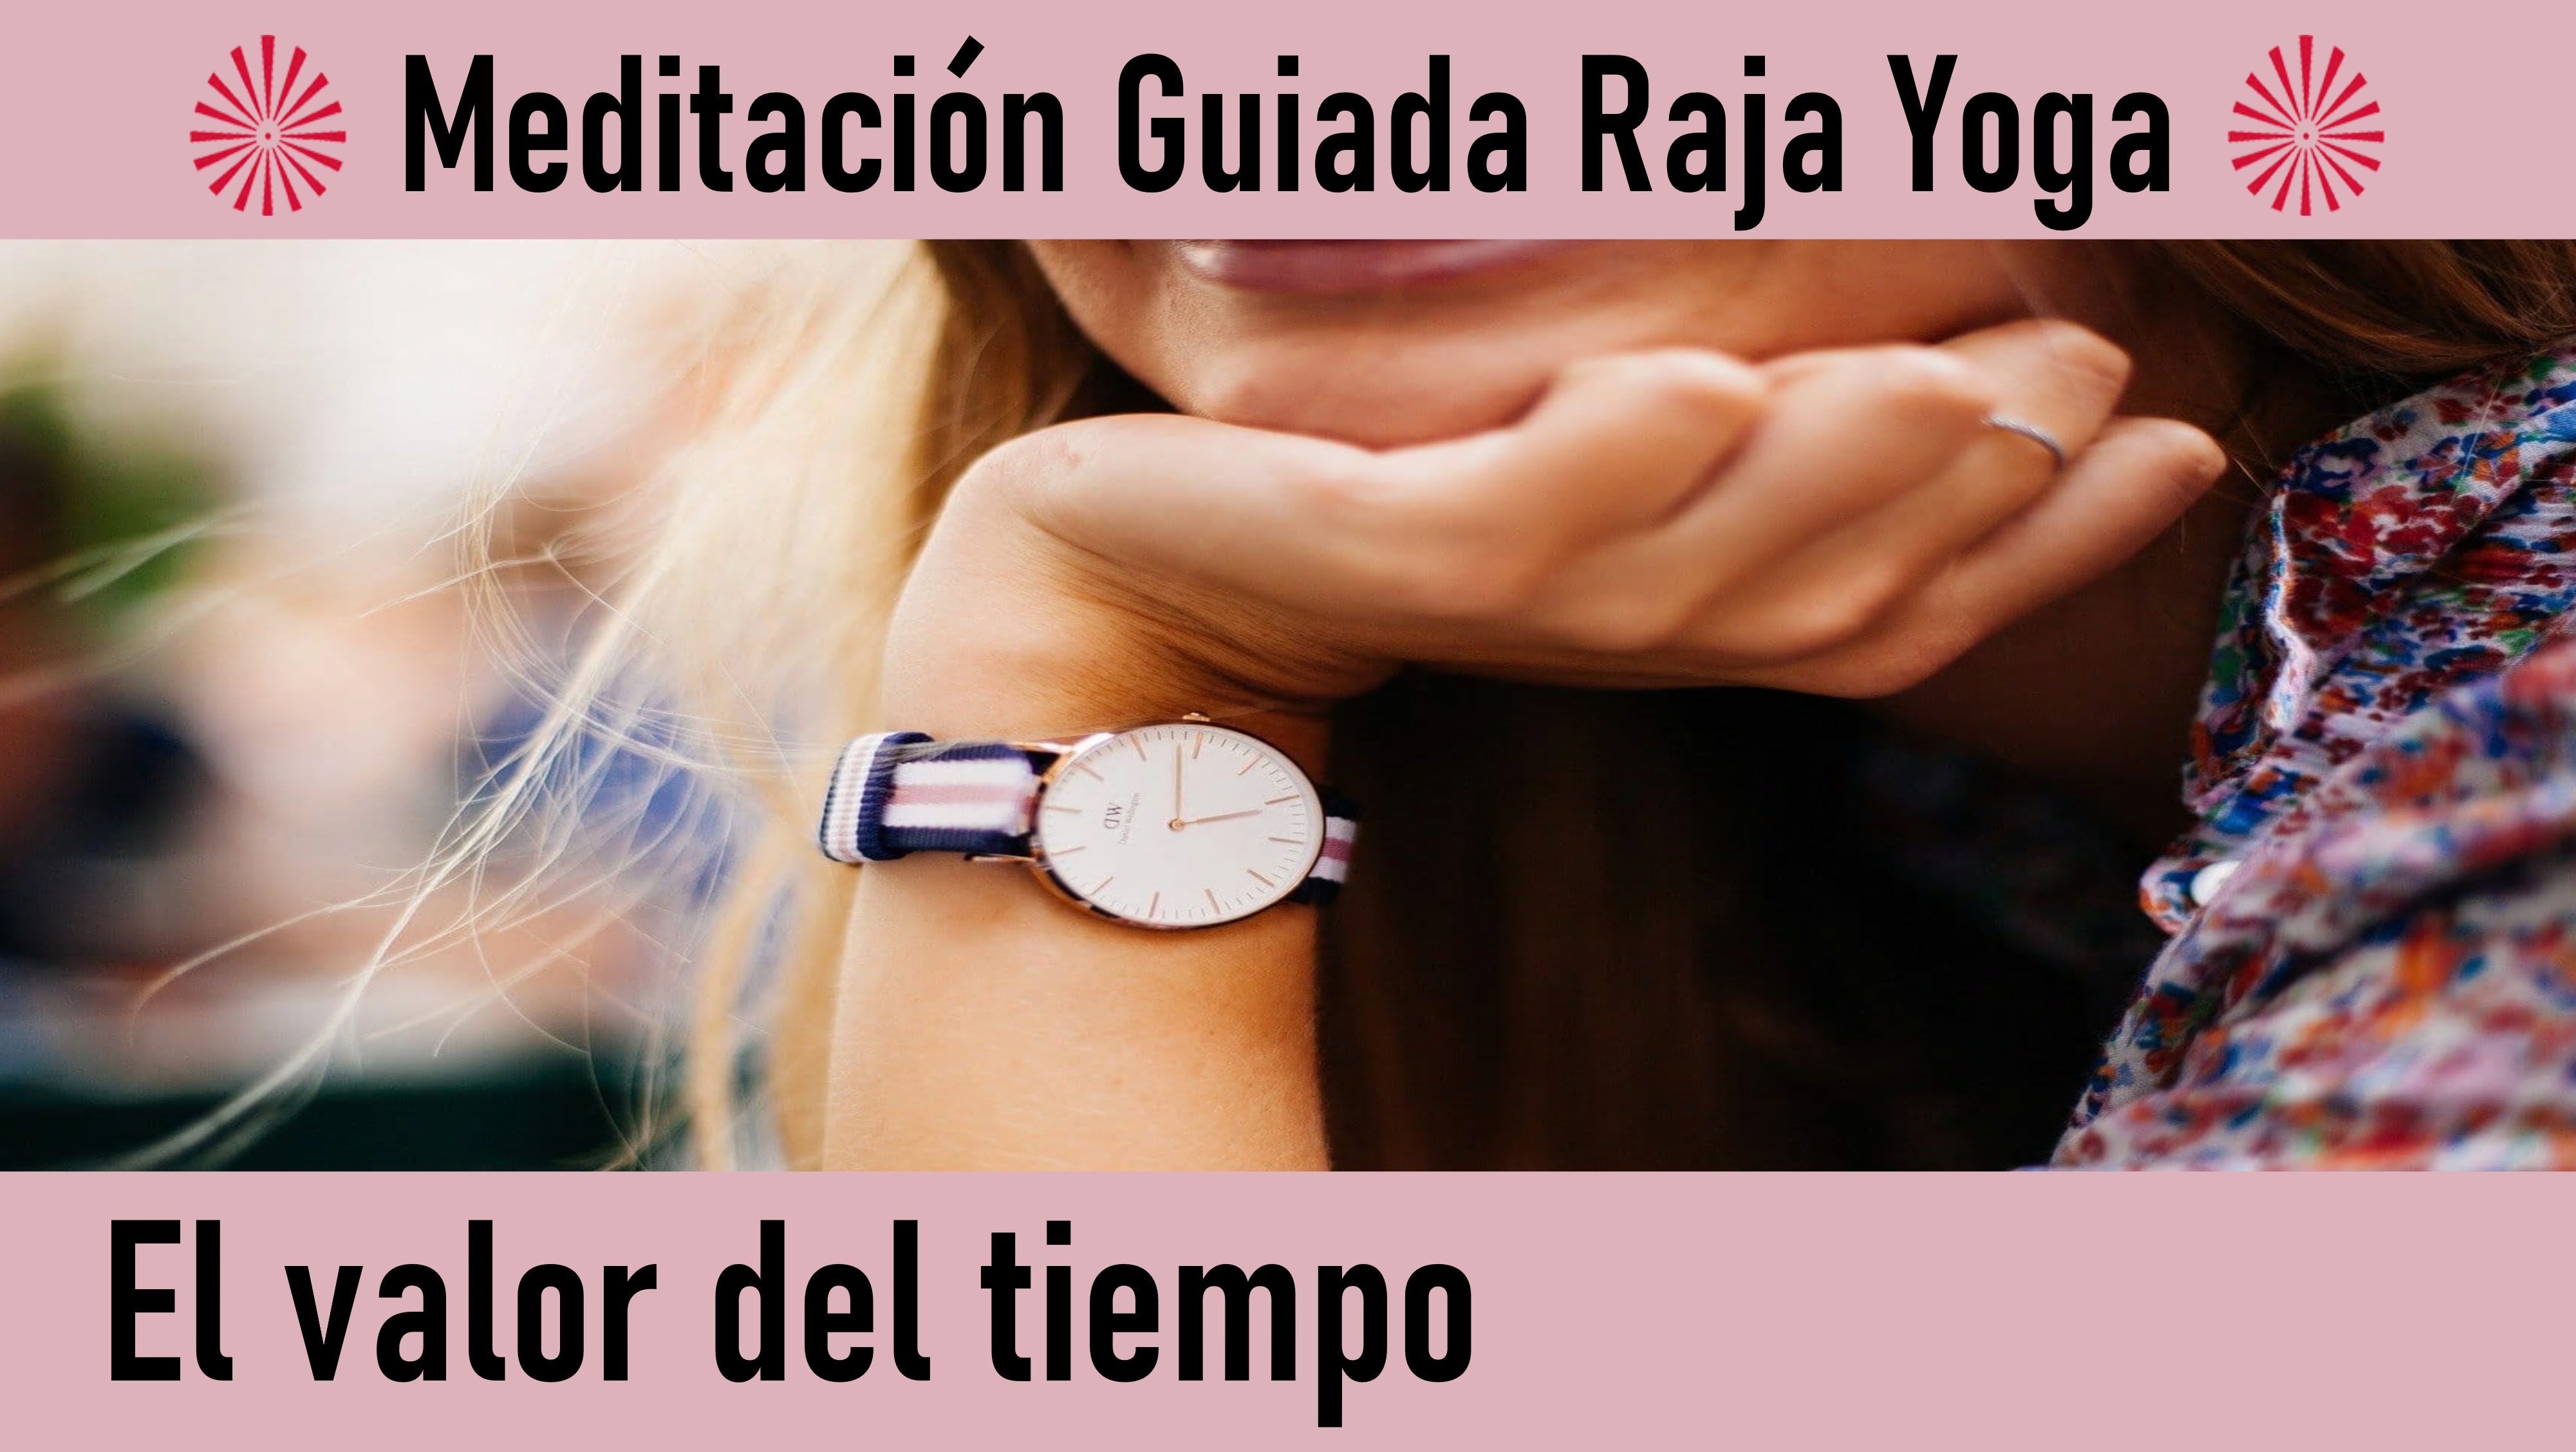 Meditación Raja Yoga:  El valor del tiempo (1 Junio 2020) On-line desde Madrid